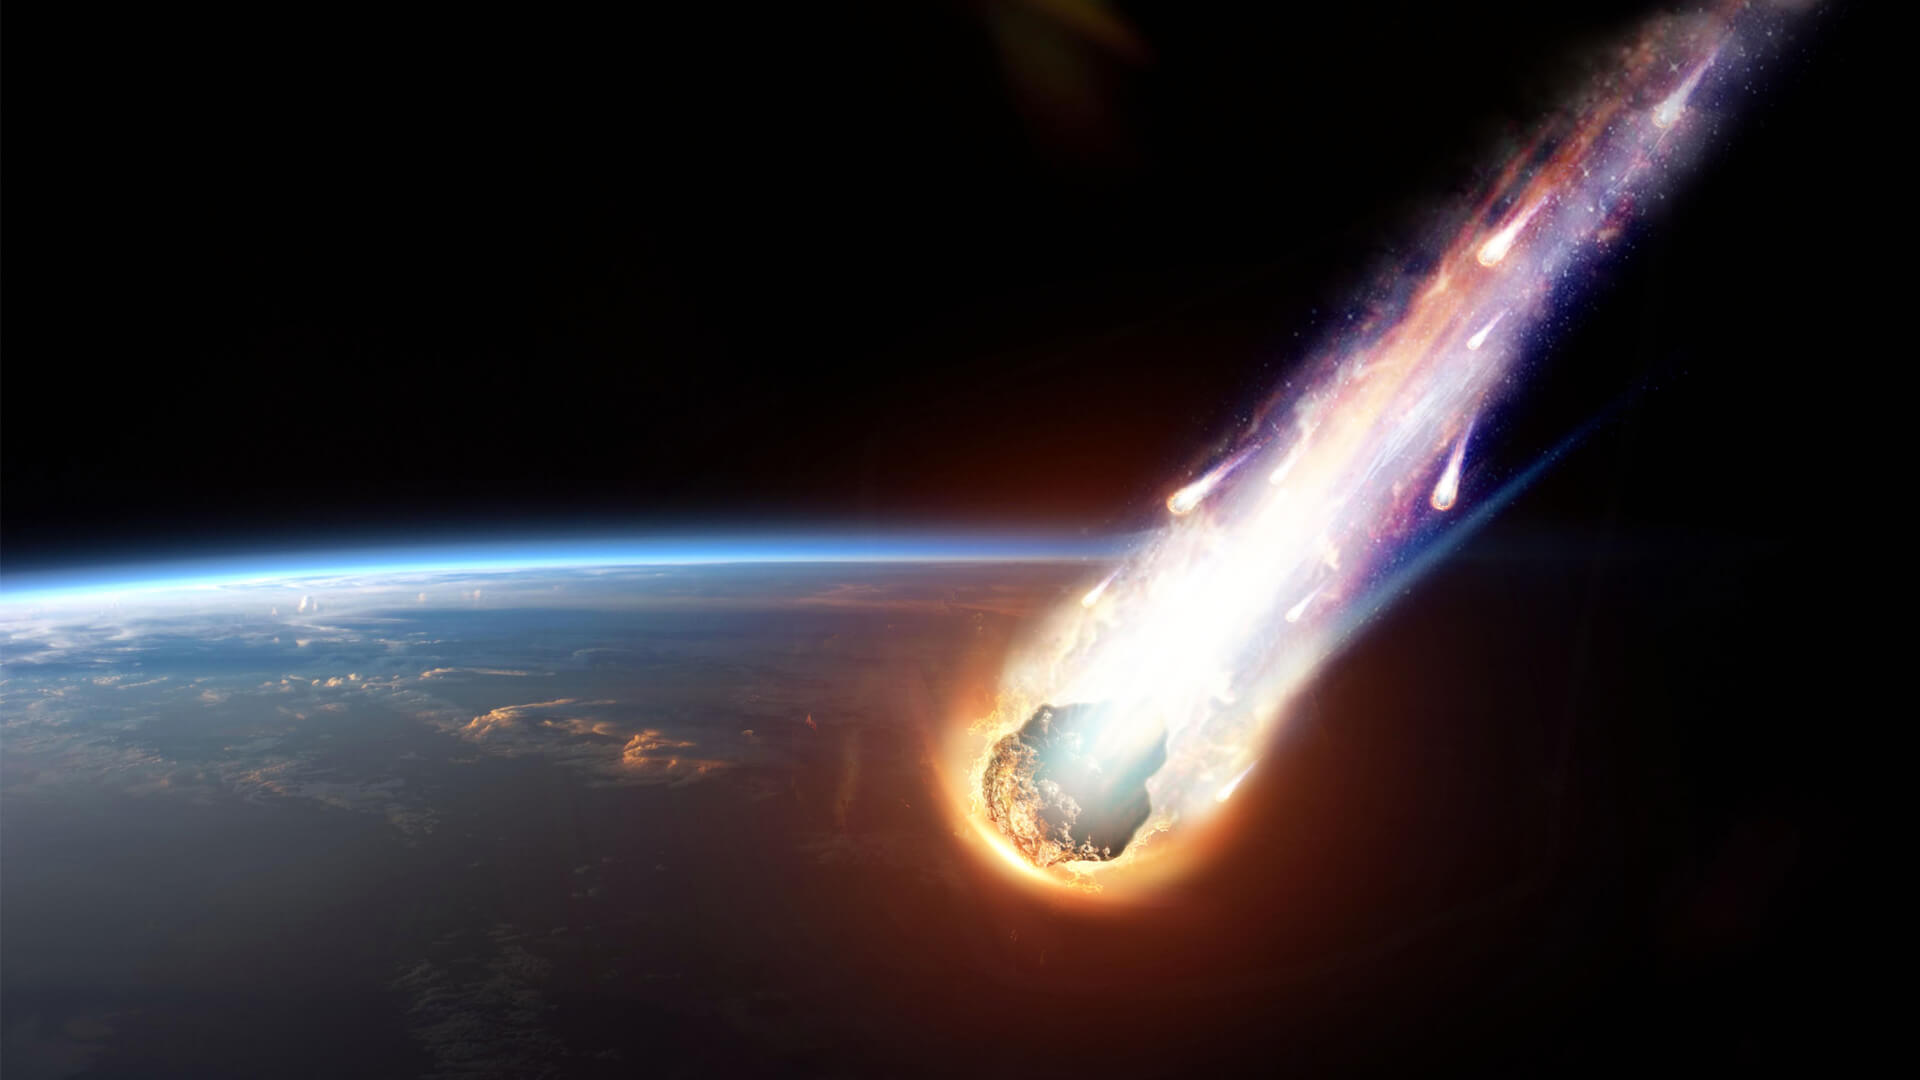 Kan en meteor orsakar brand?